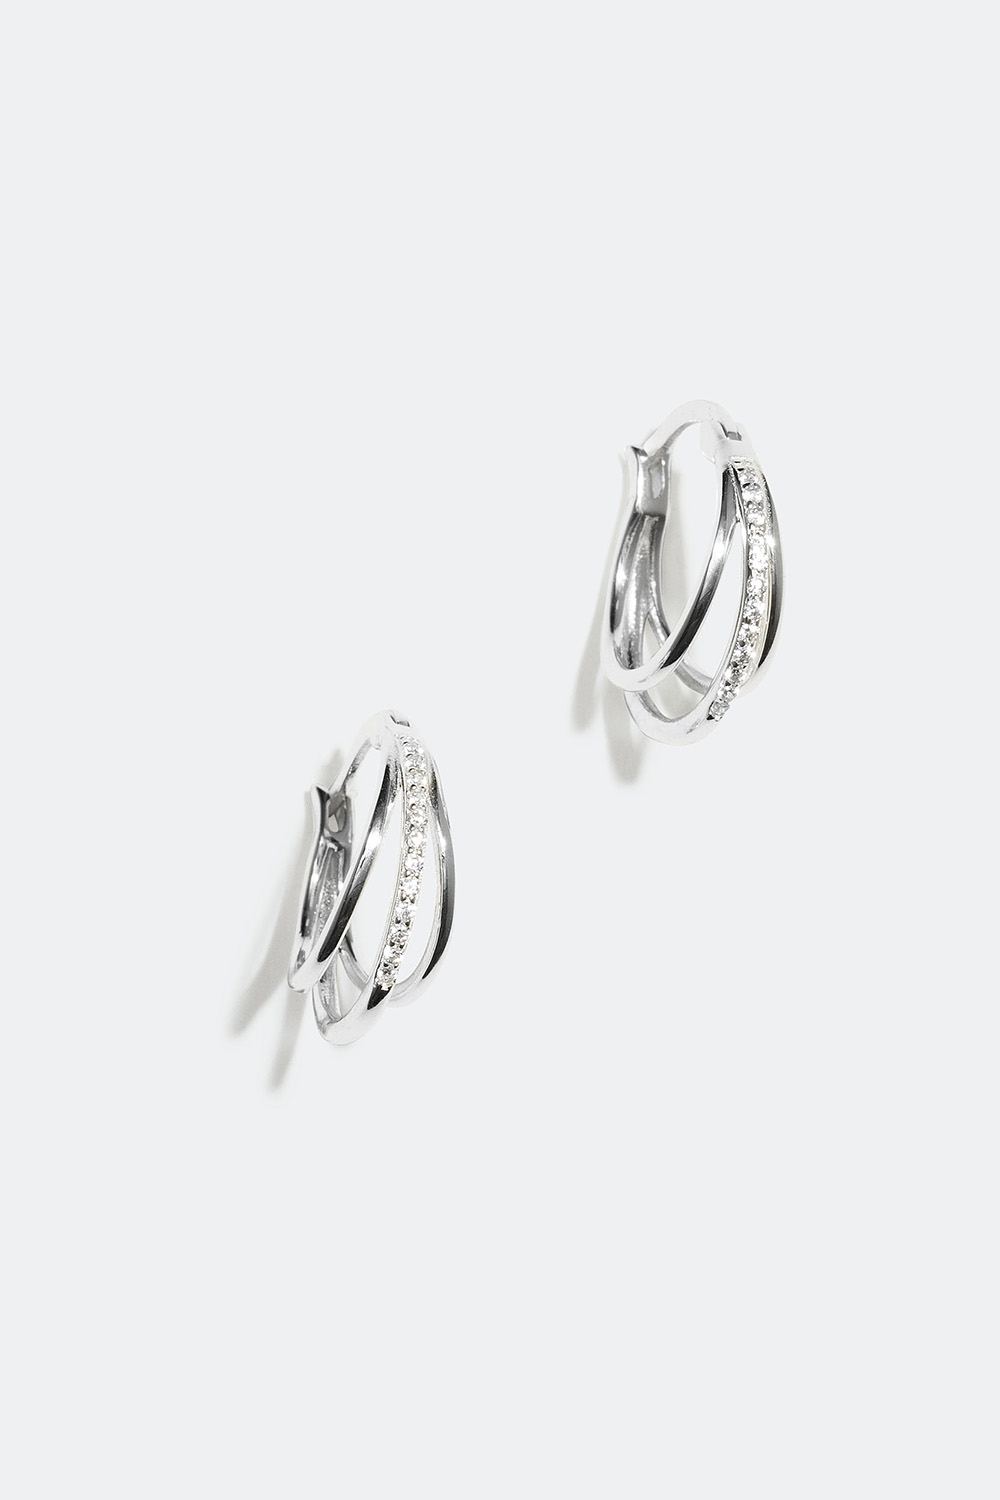 Triple øreringer med Cubic Zirconia, ekte sølv, 1,4 cm i gruppen Ekte sølv / Sølvøredobber / Øreringer i ekte sølv hos Glitter (328004011000)